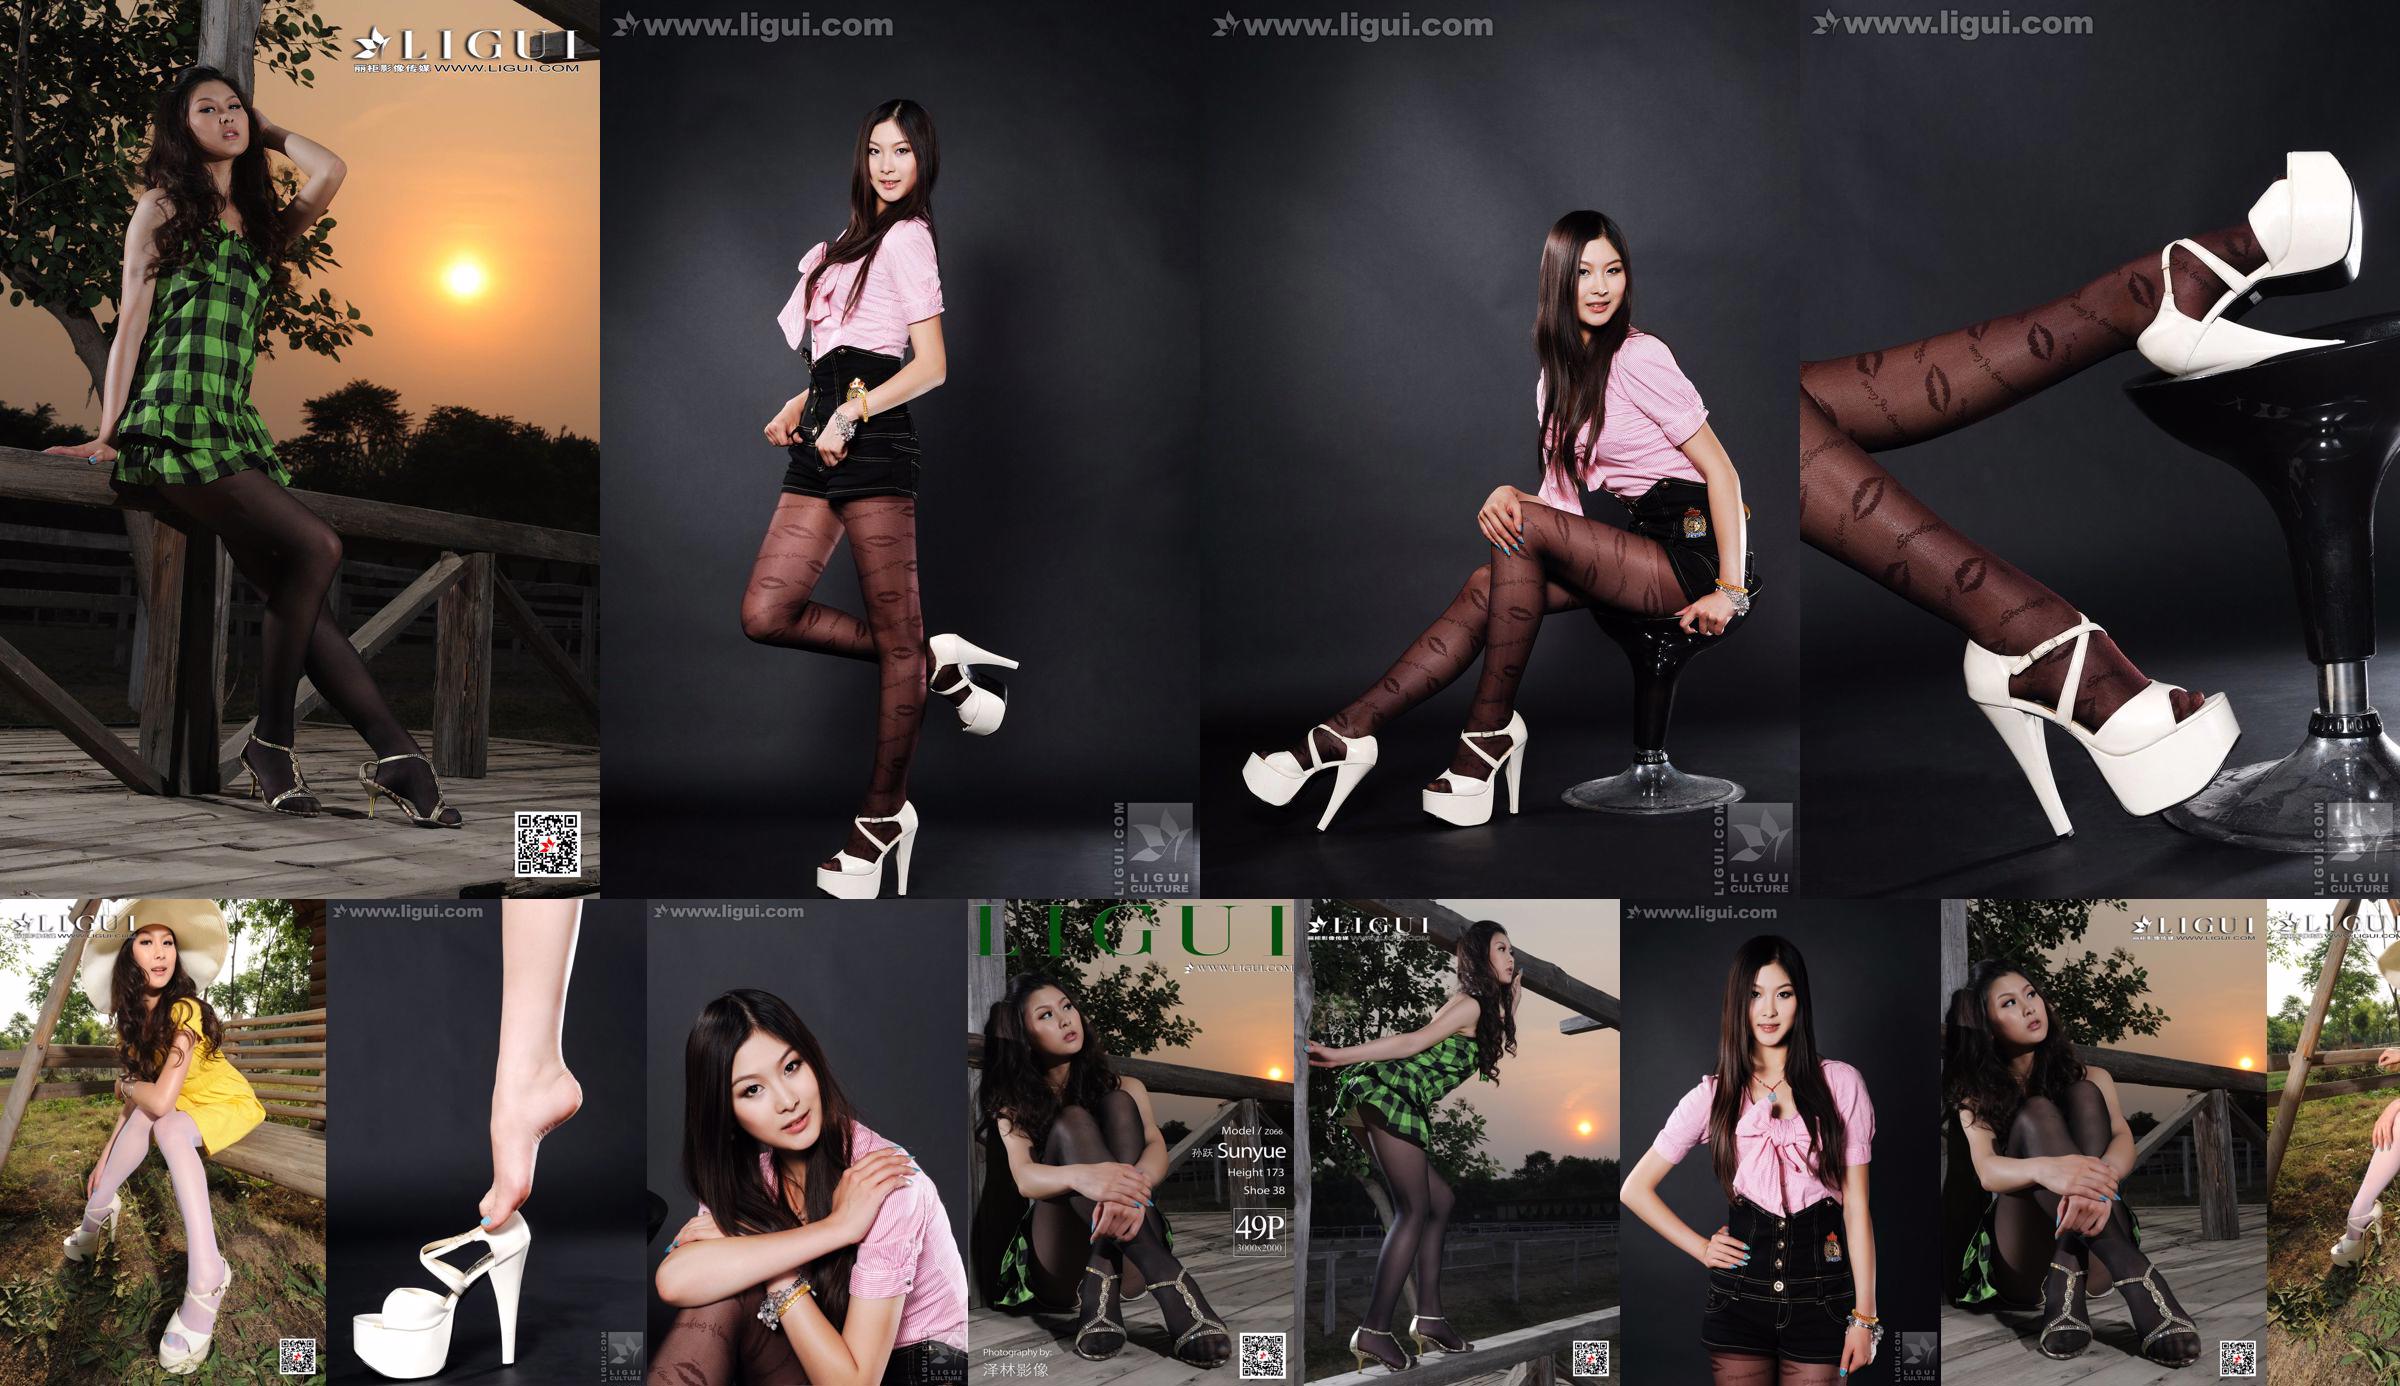 Model Sun Yue "Stoking Seksi dan Glamor" [丽 柜 LiGui] Gambar Foto Kaki Cantik dan Kaki Giok No.b22e23 Halaman 1